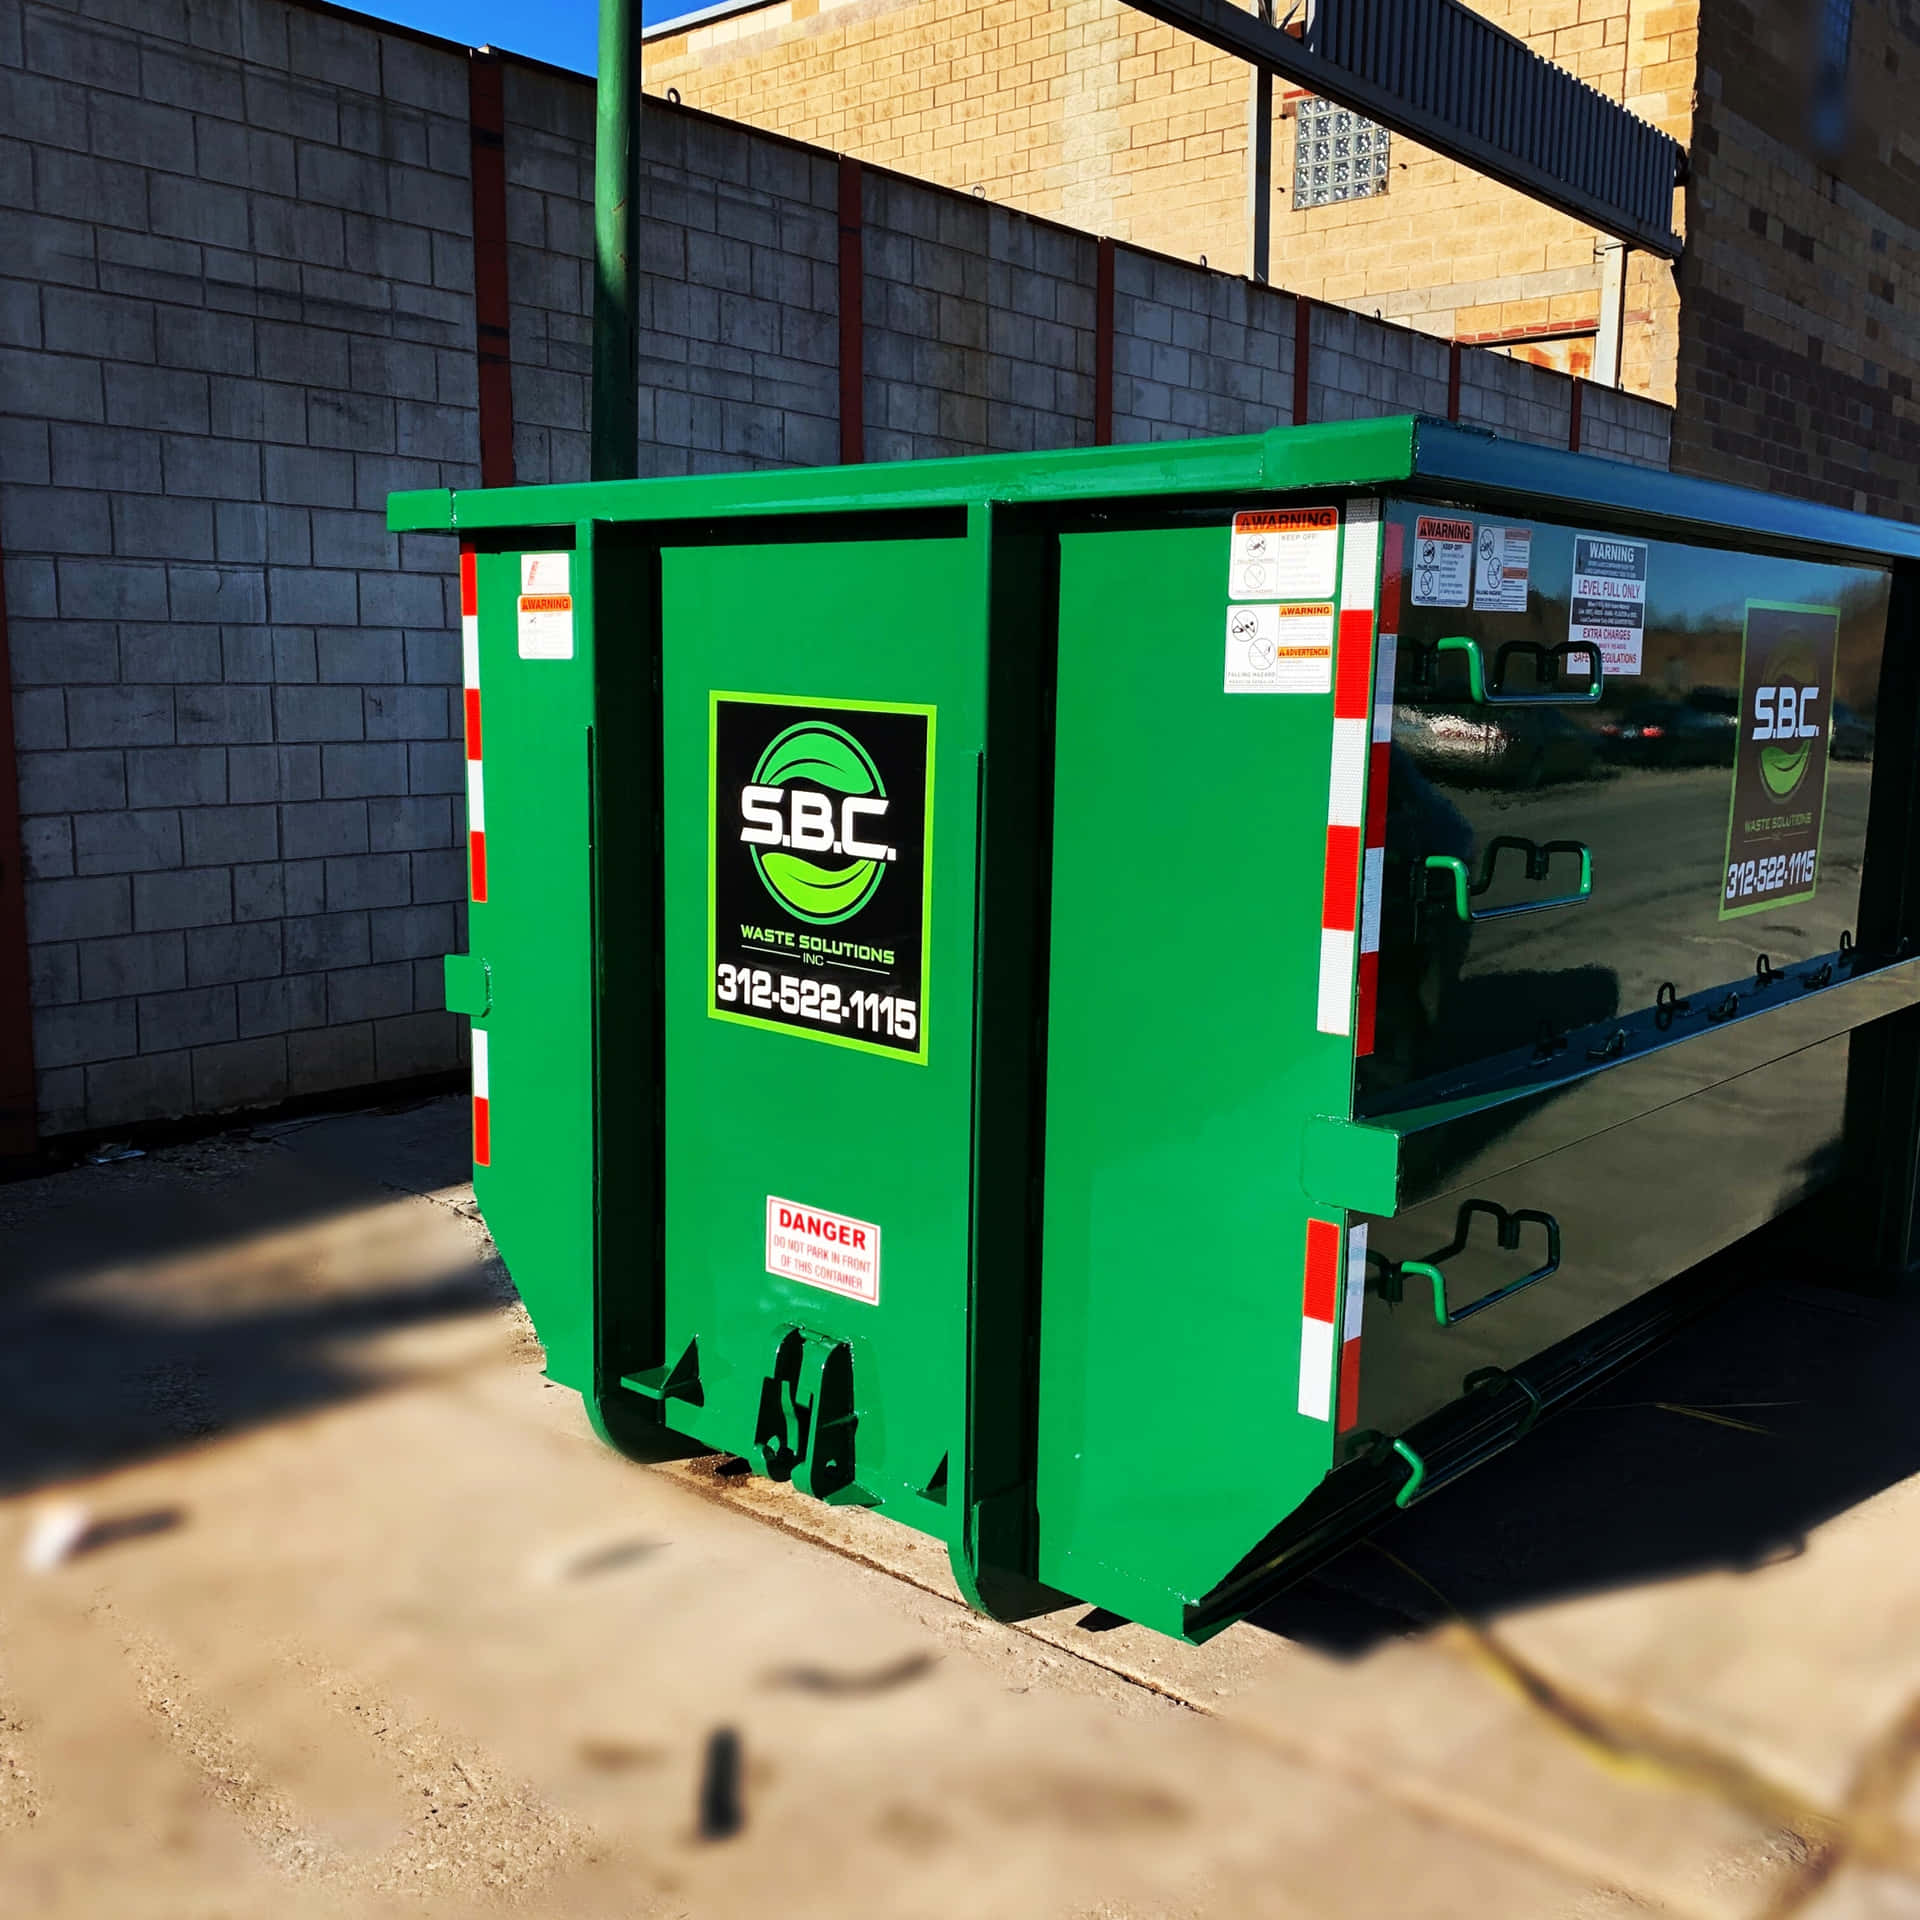 A Green Dumpster